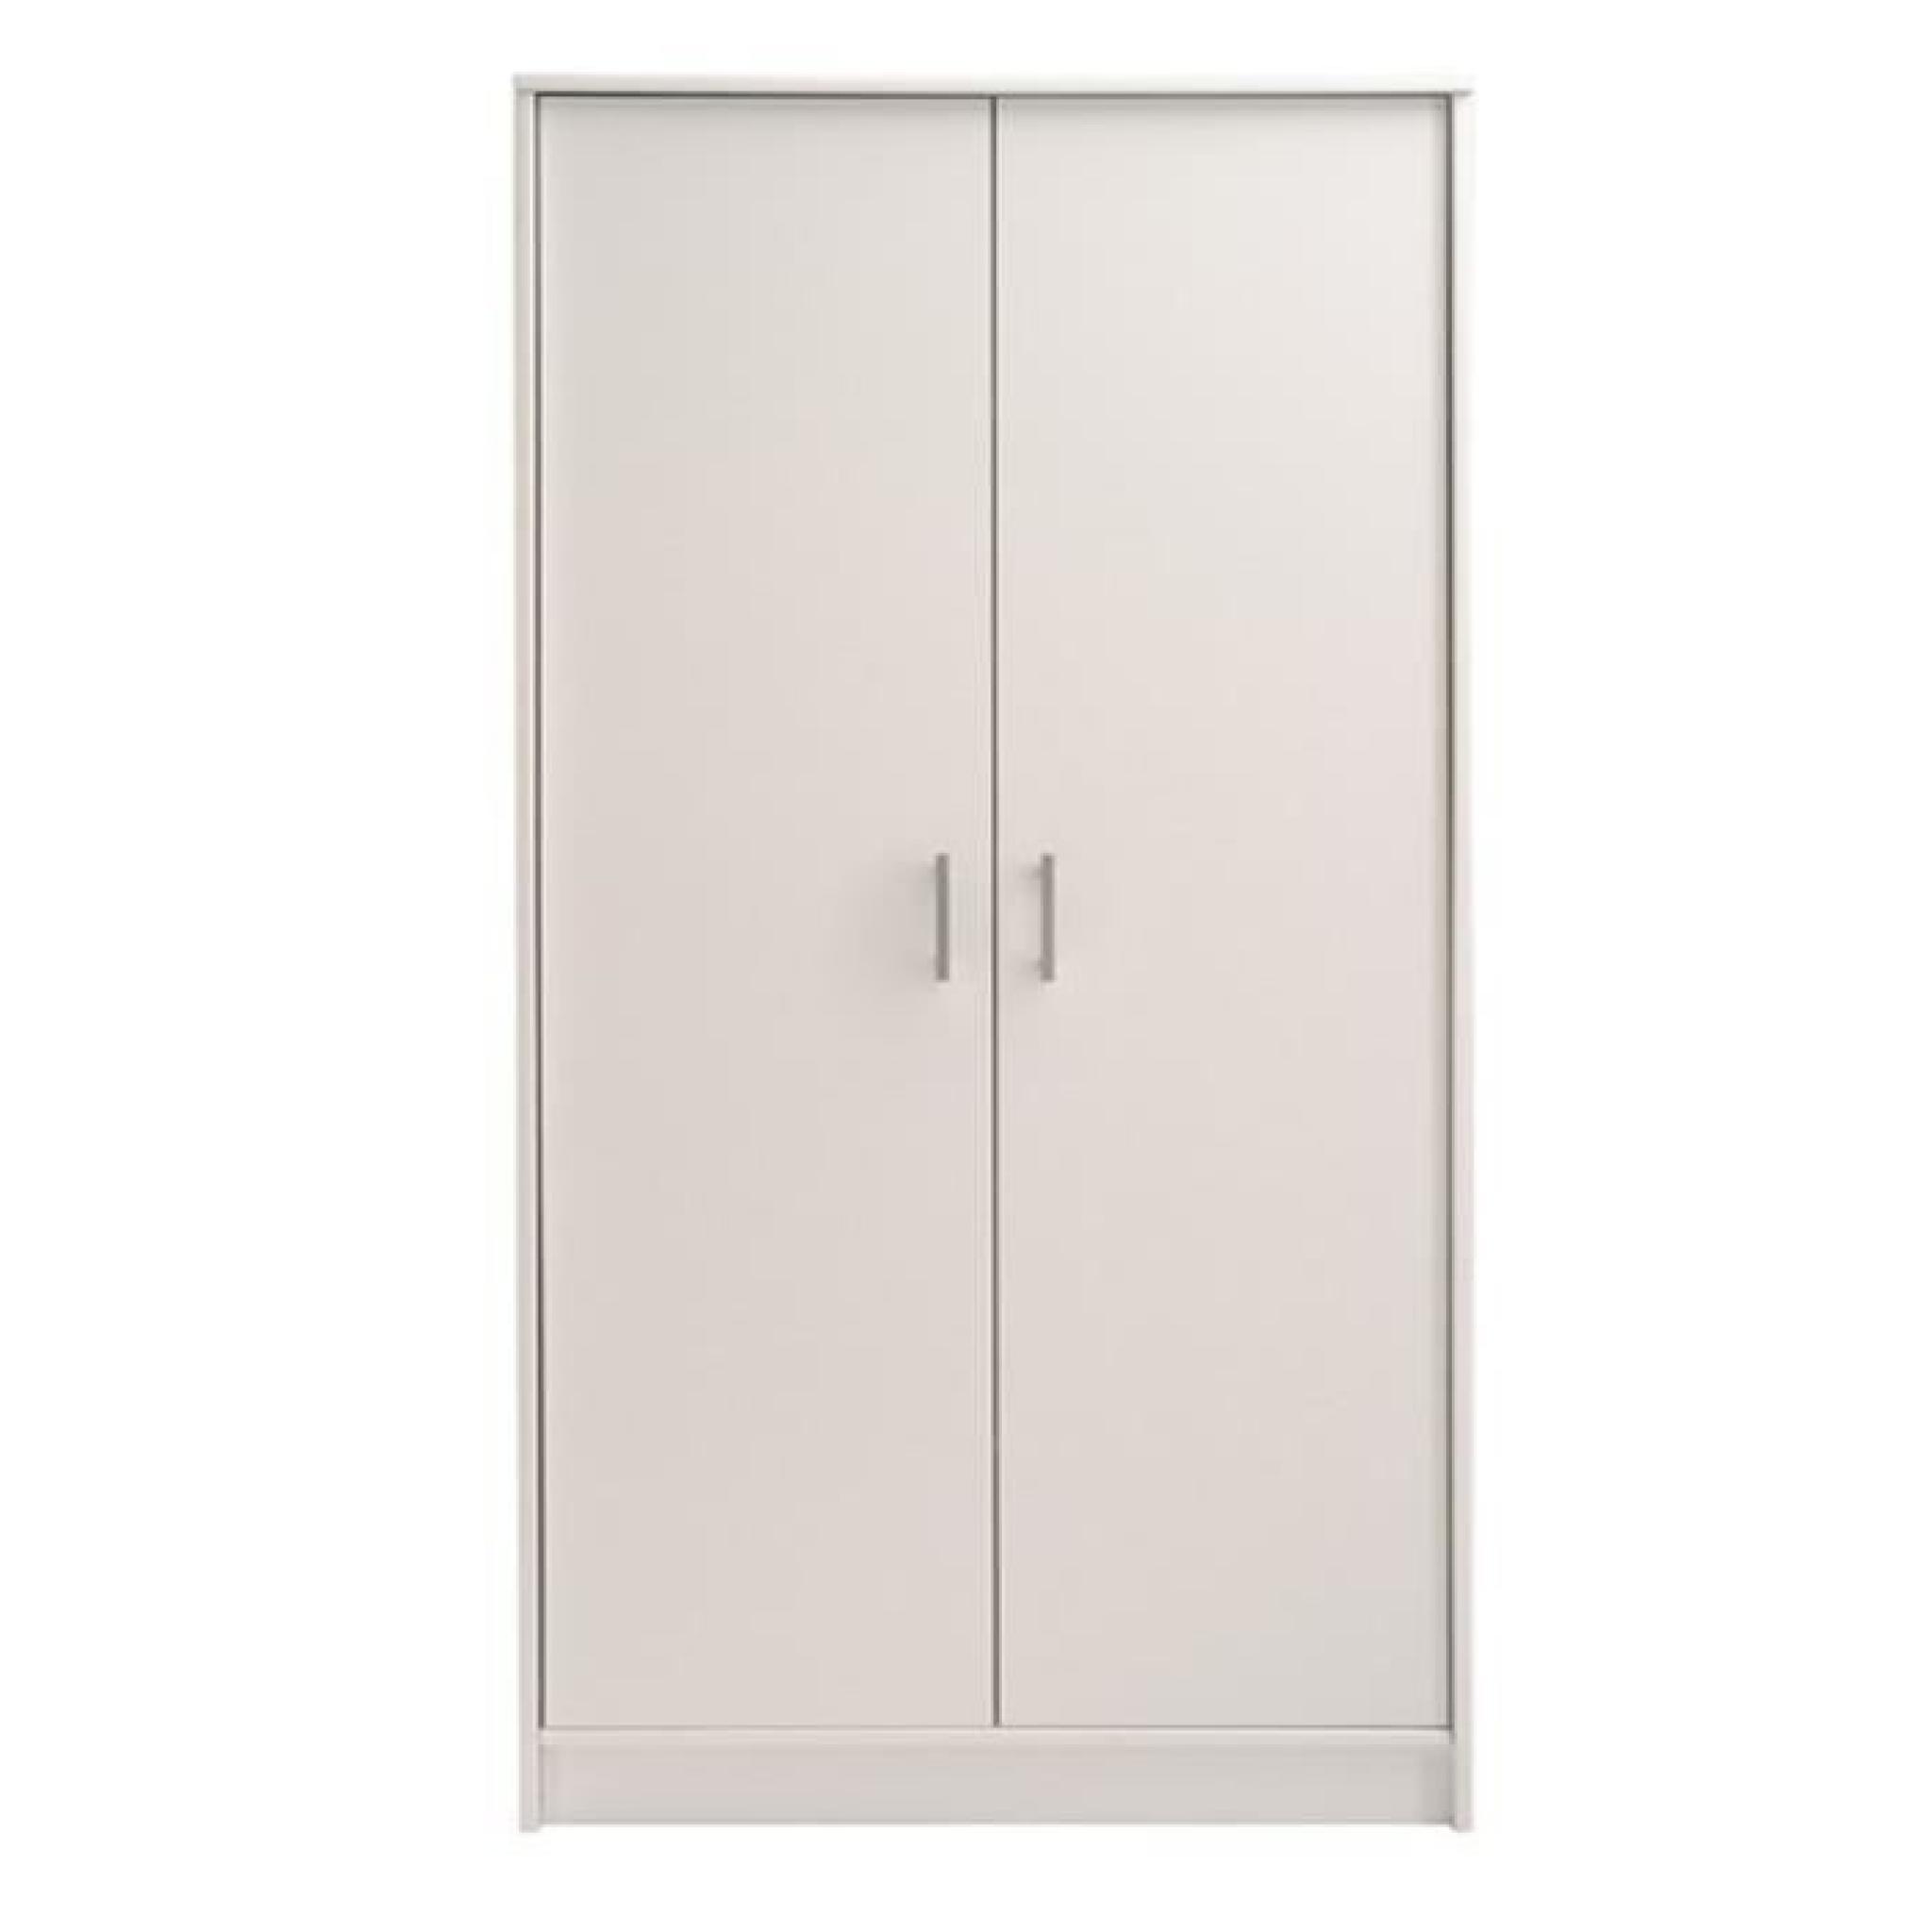 Armoire 2 portes coloris Blanc megève, H 181 x L 75 x P 34 cm